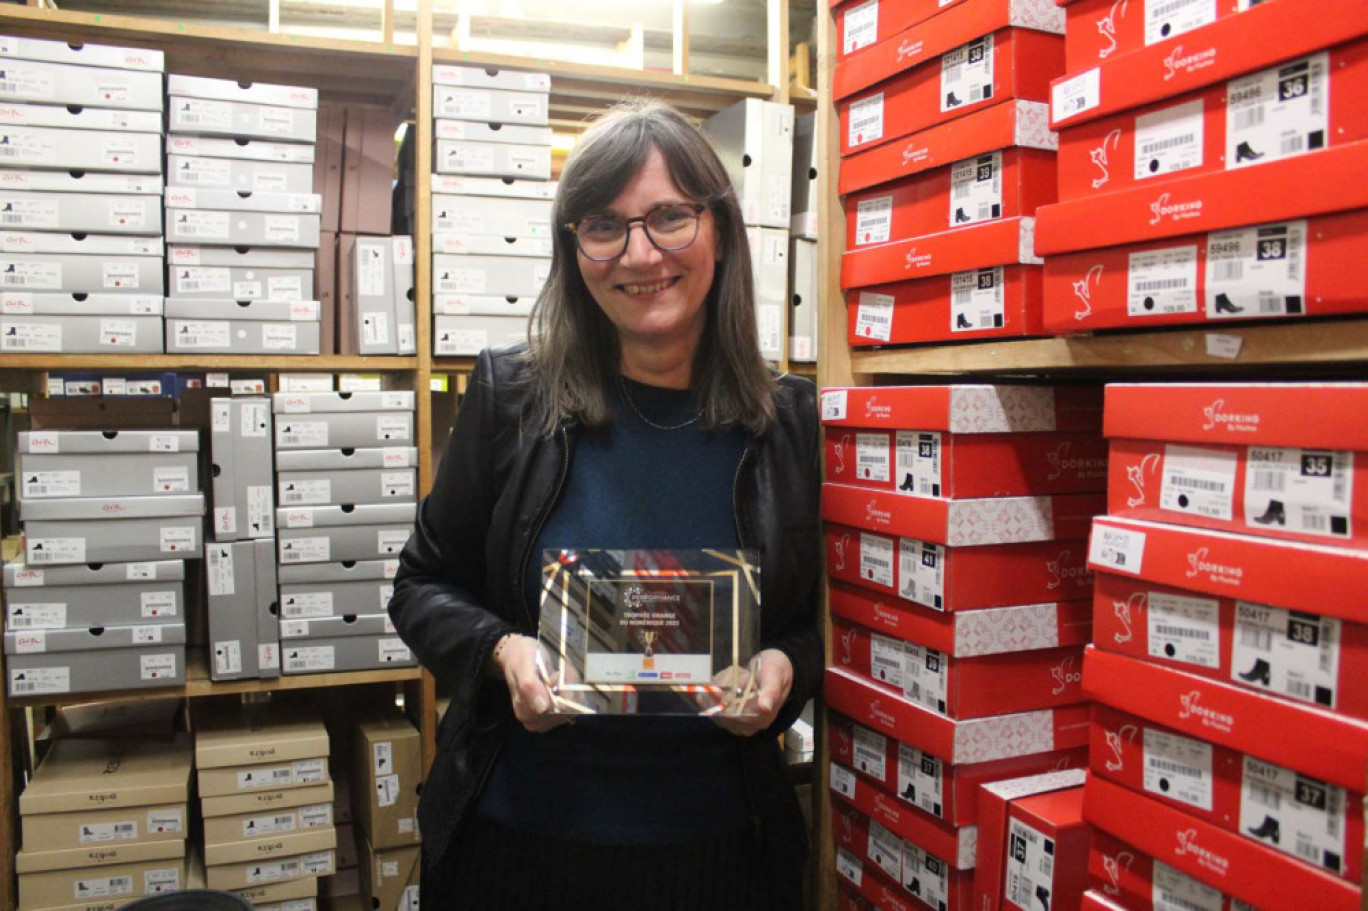 Sylvie Laboue de la boutique Un pas de Plus à Soissons pose au sein de sa réserve avec le trophée Orange du numérique décerné par la CCI et récompensant la création de son site Internet de déstockage de chaussures.